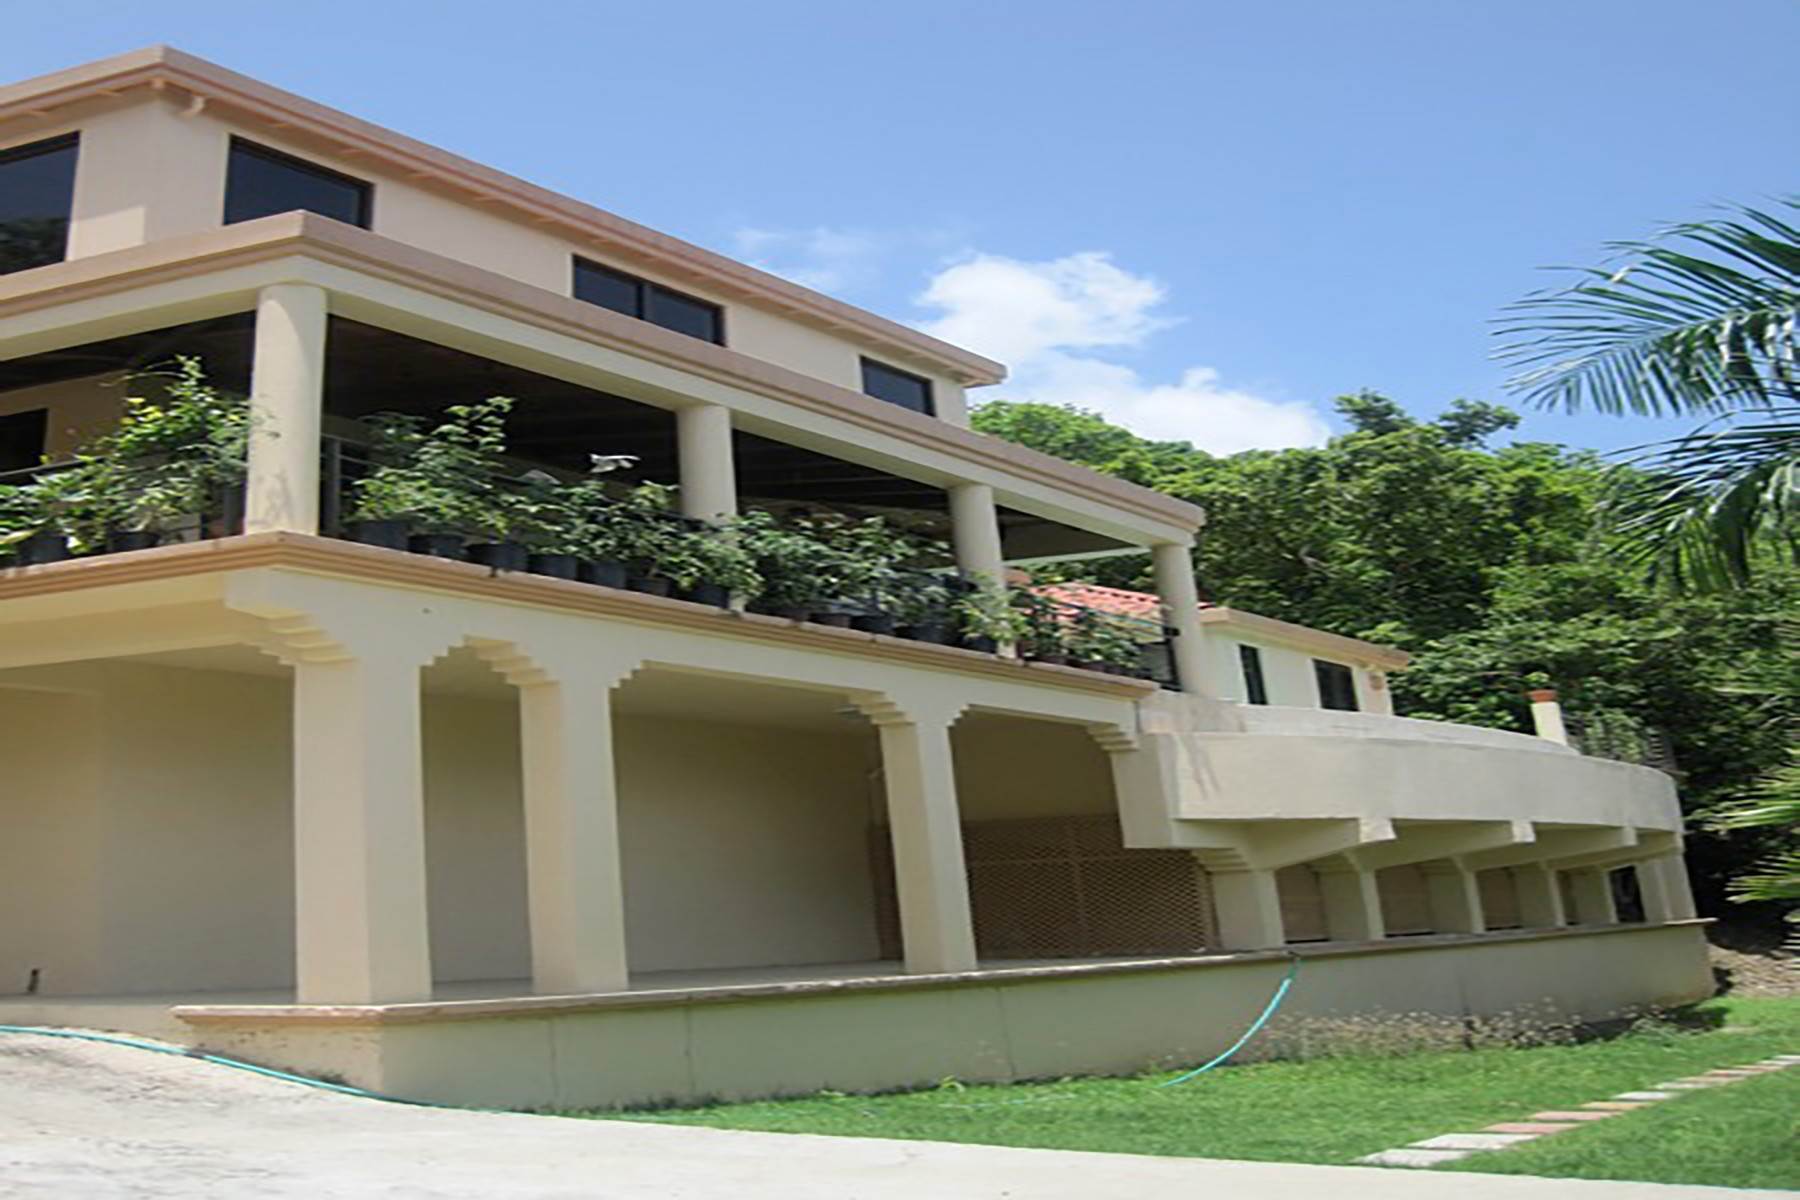 2. Single Family Homes voor Verkoop op Belmont, Tortola Britse Maagdeneilanden